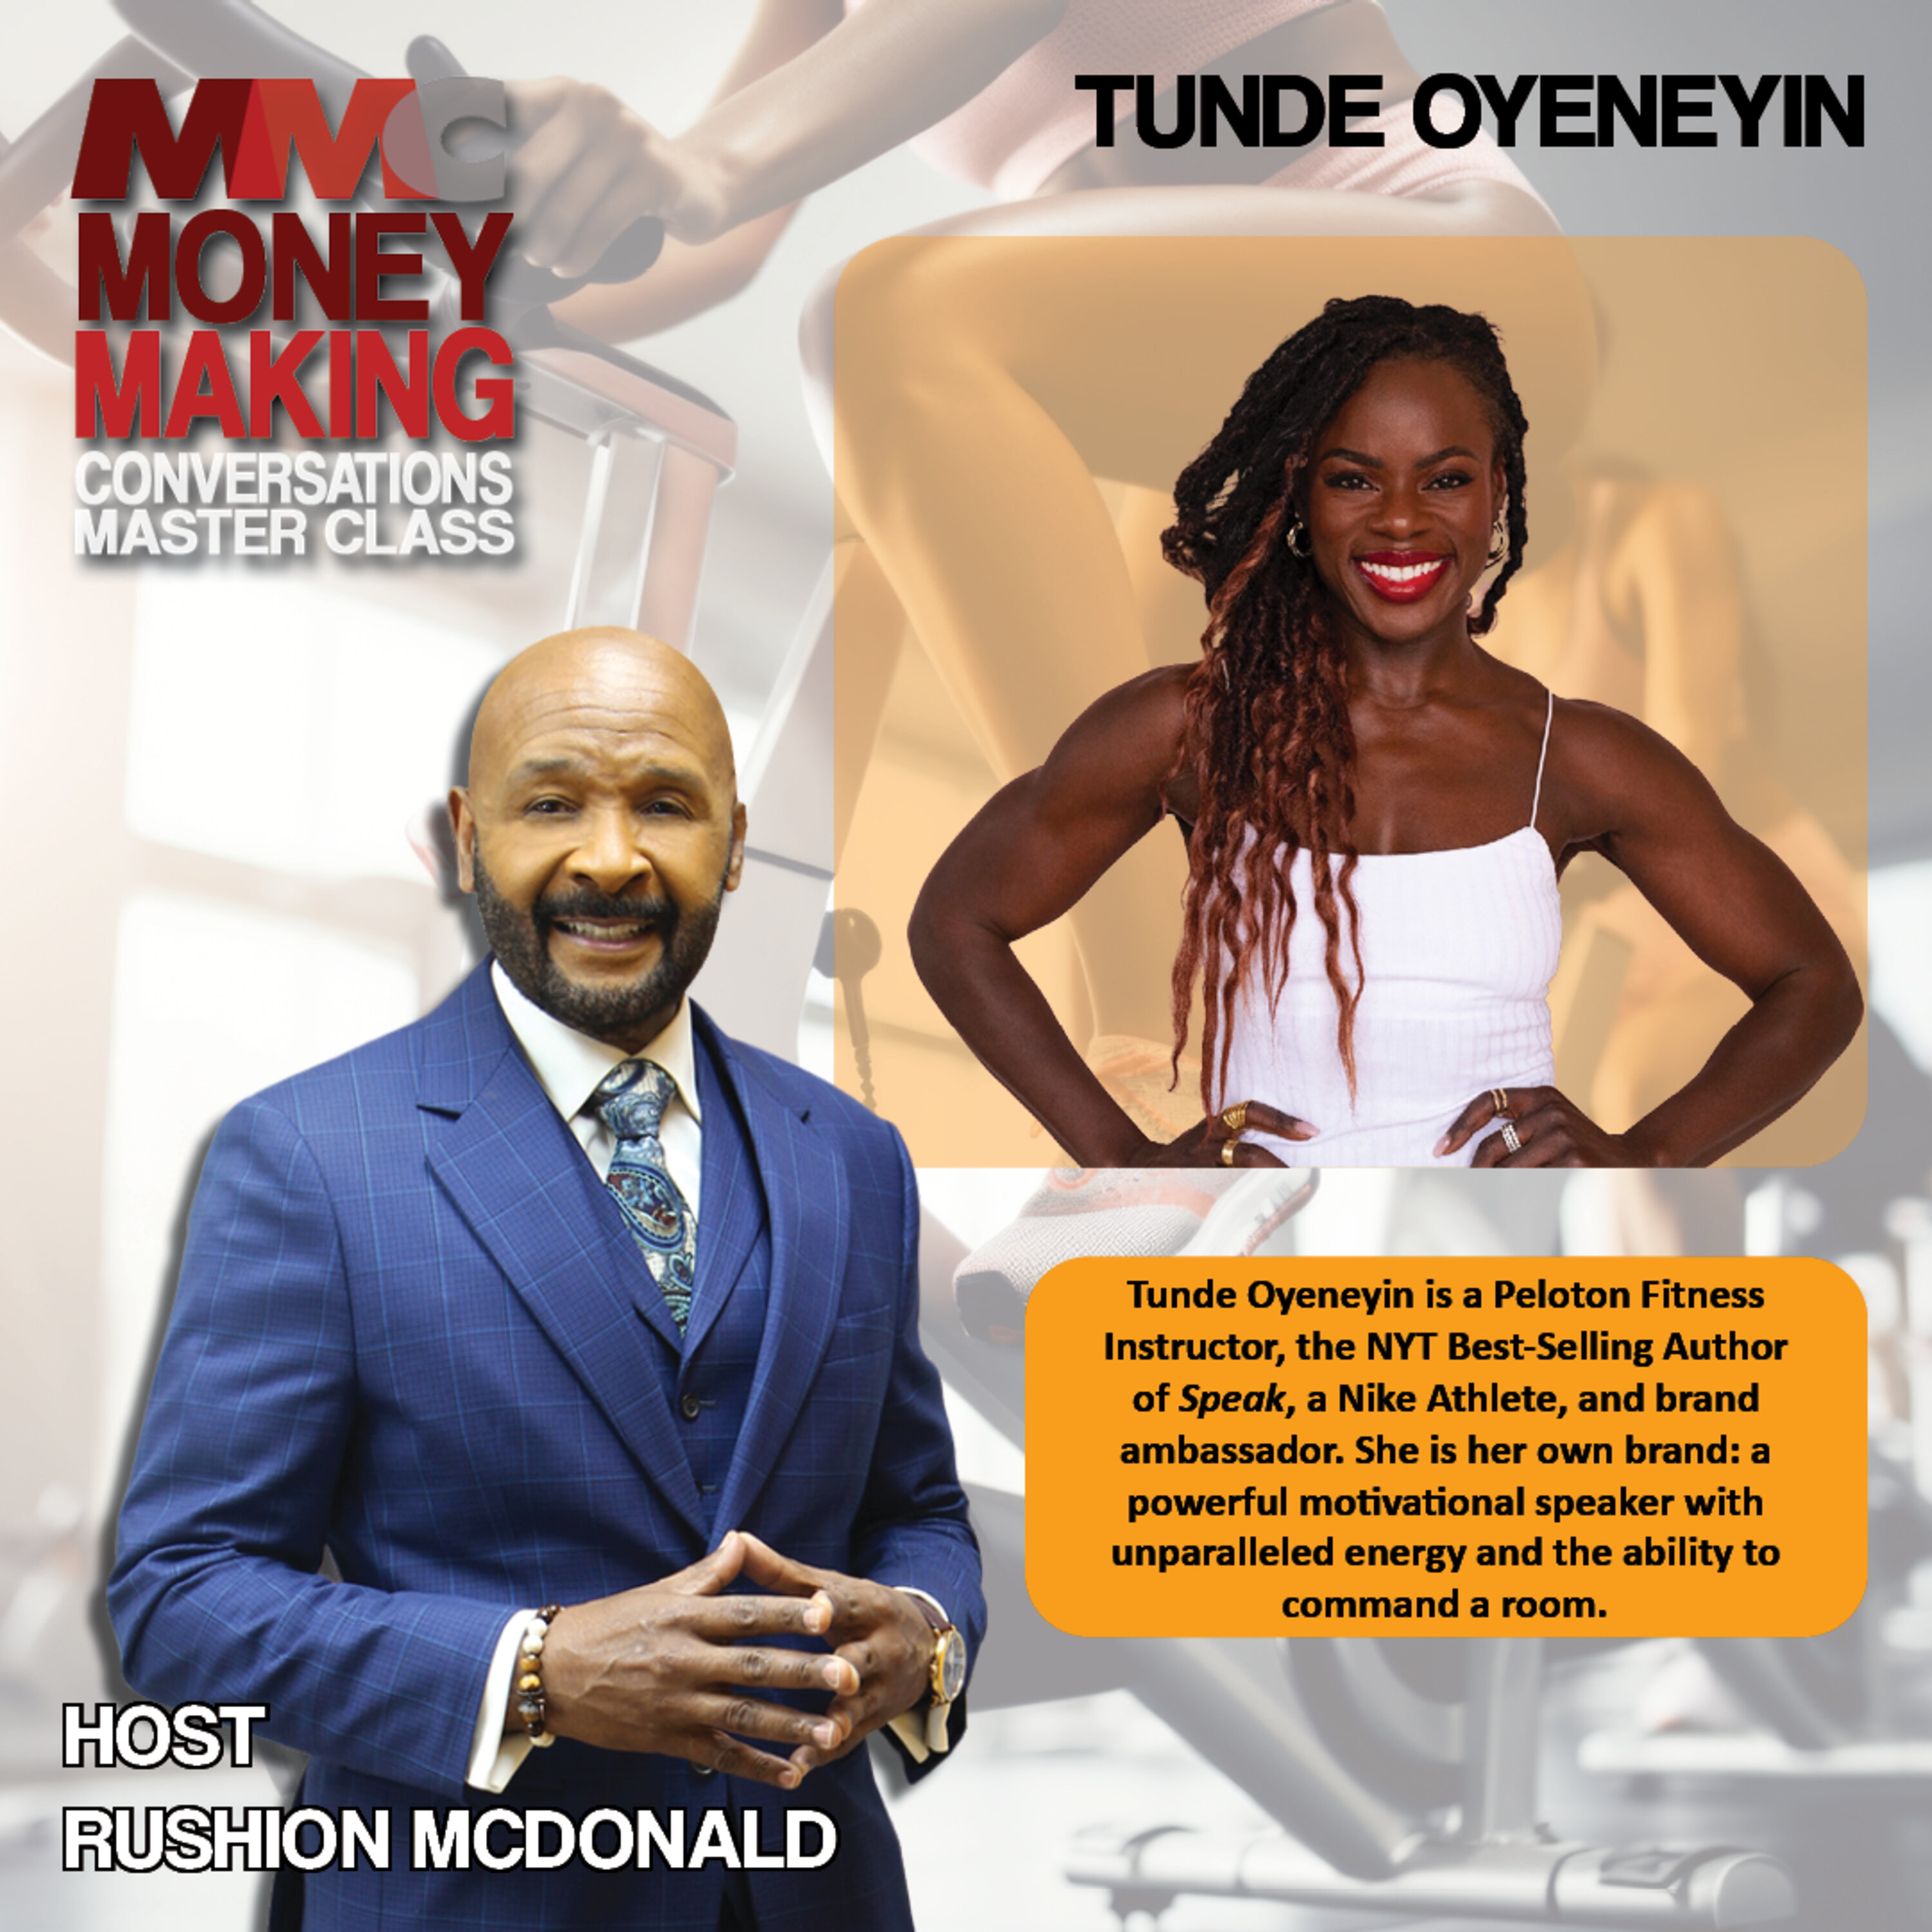 Tunde Oyeneyin’s a Peloton Instructor, NY Times Bestselling Author, Nike Athlete, and motivational speaker.